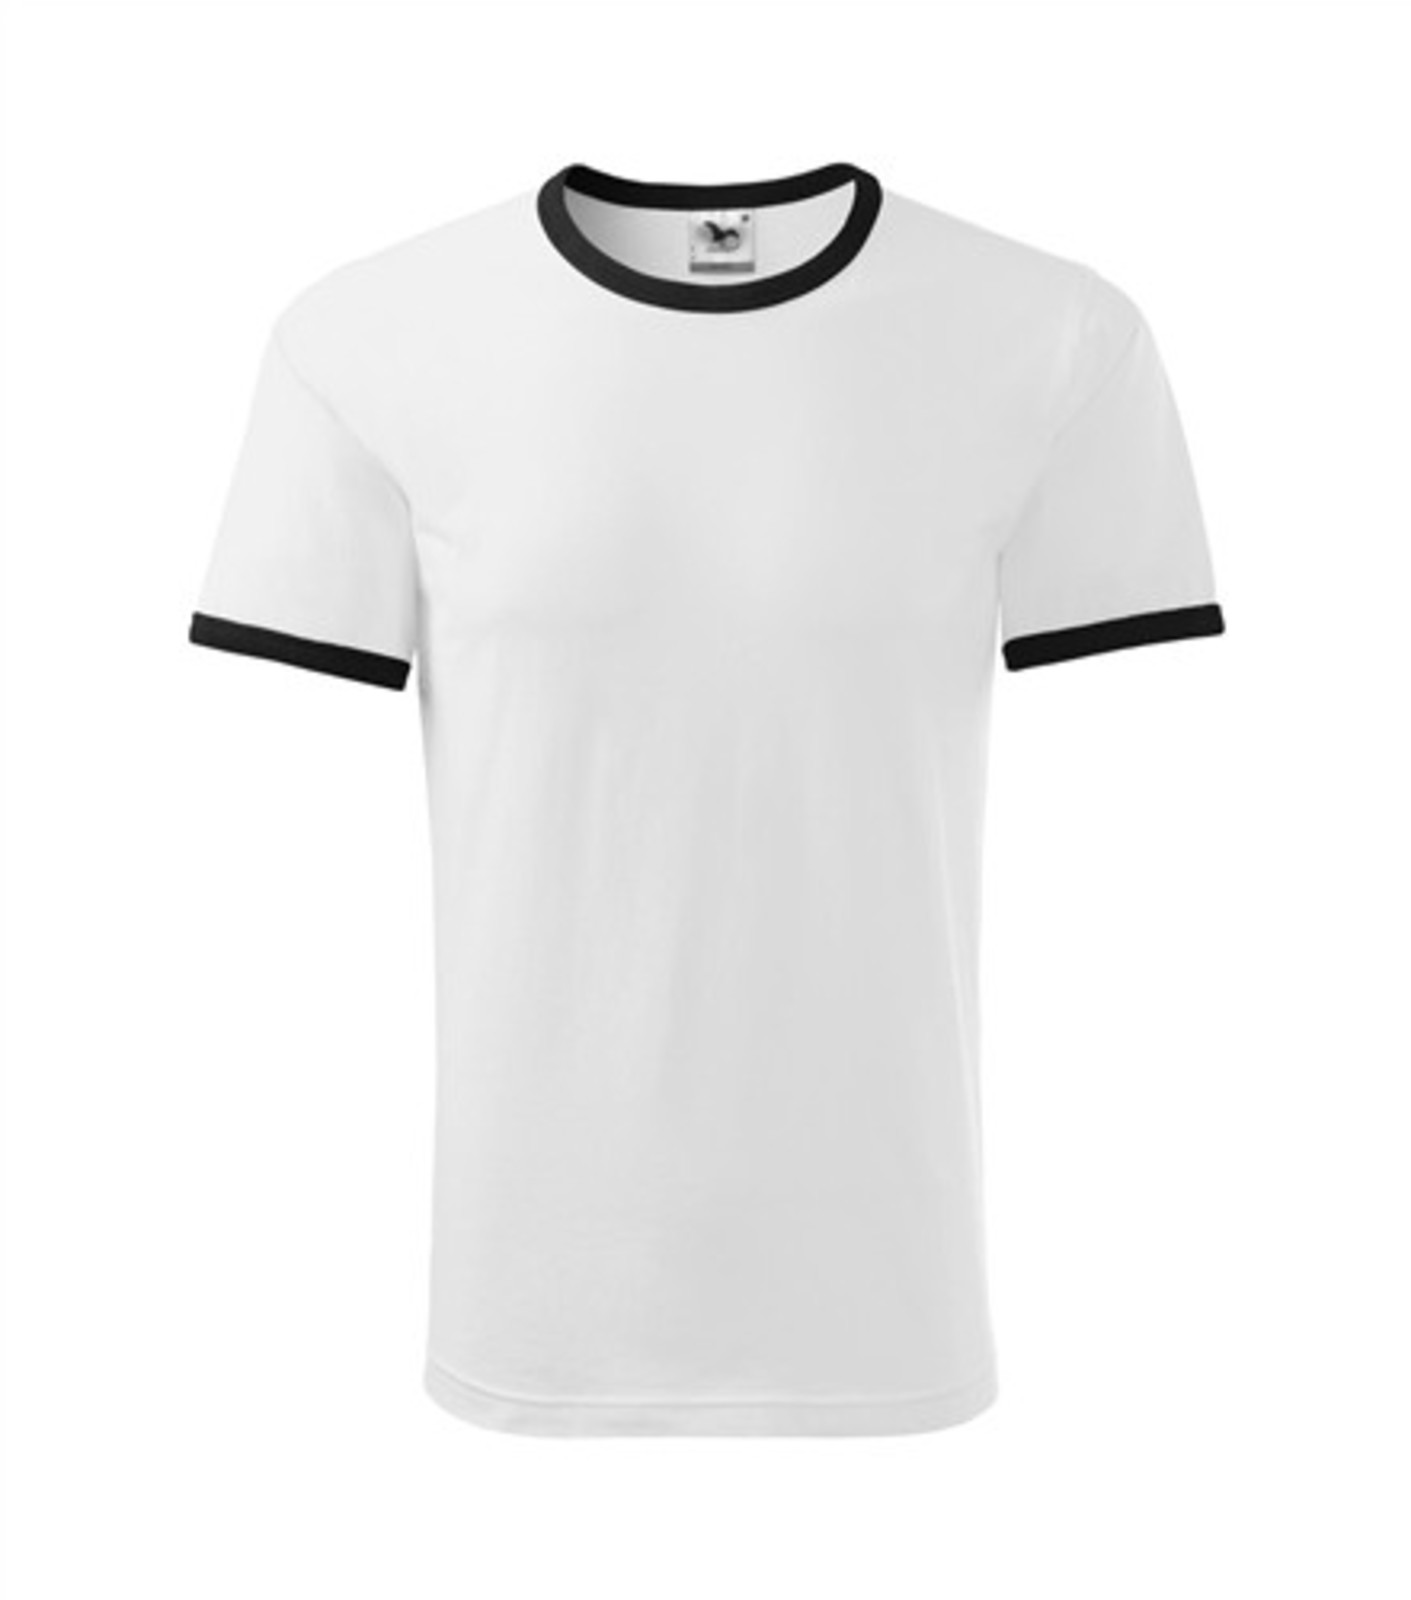 Unisex tričko Adler Infinity 131 - veľkosť: S, farba: biela/čierna